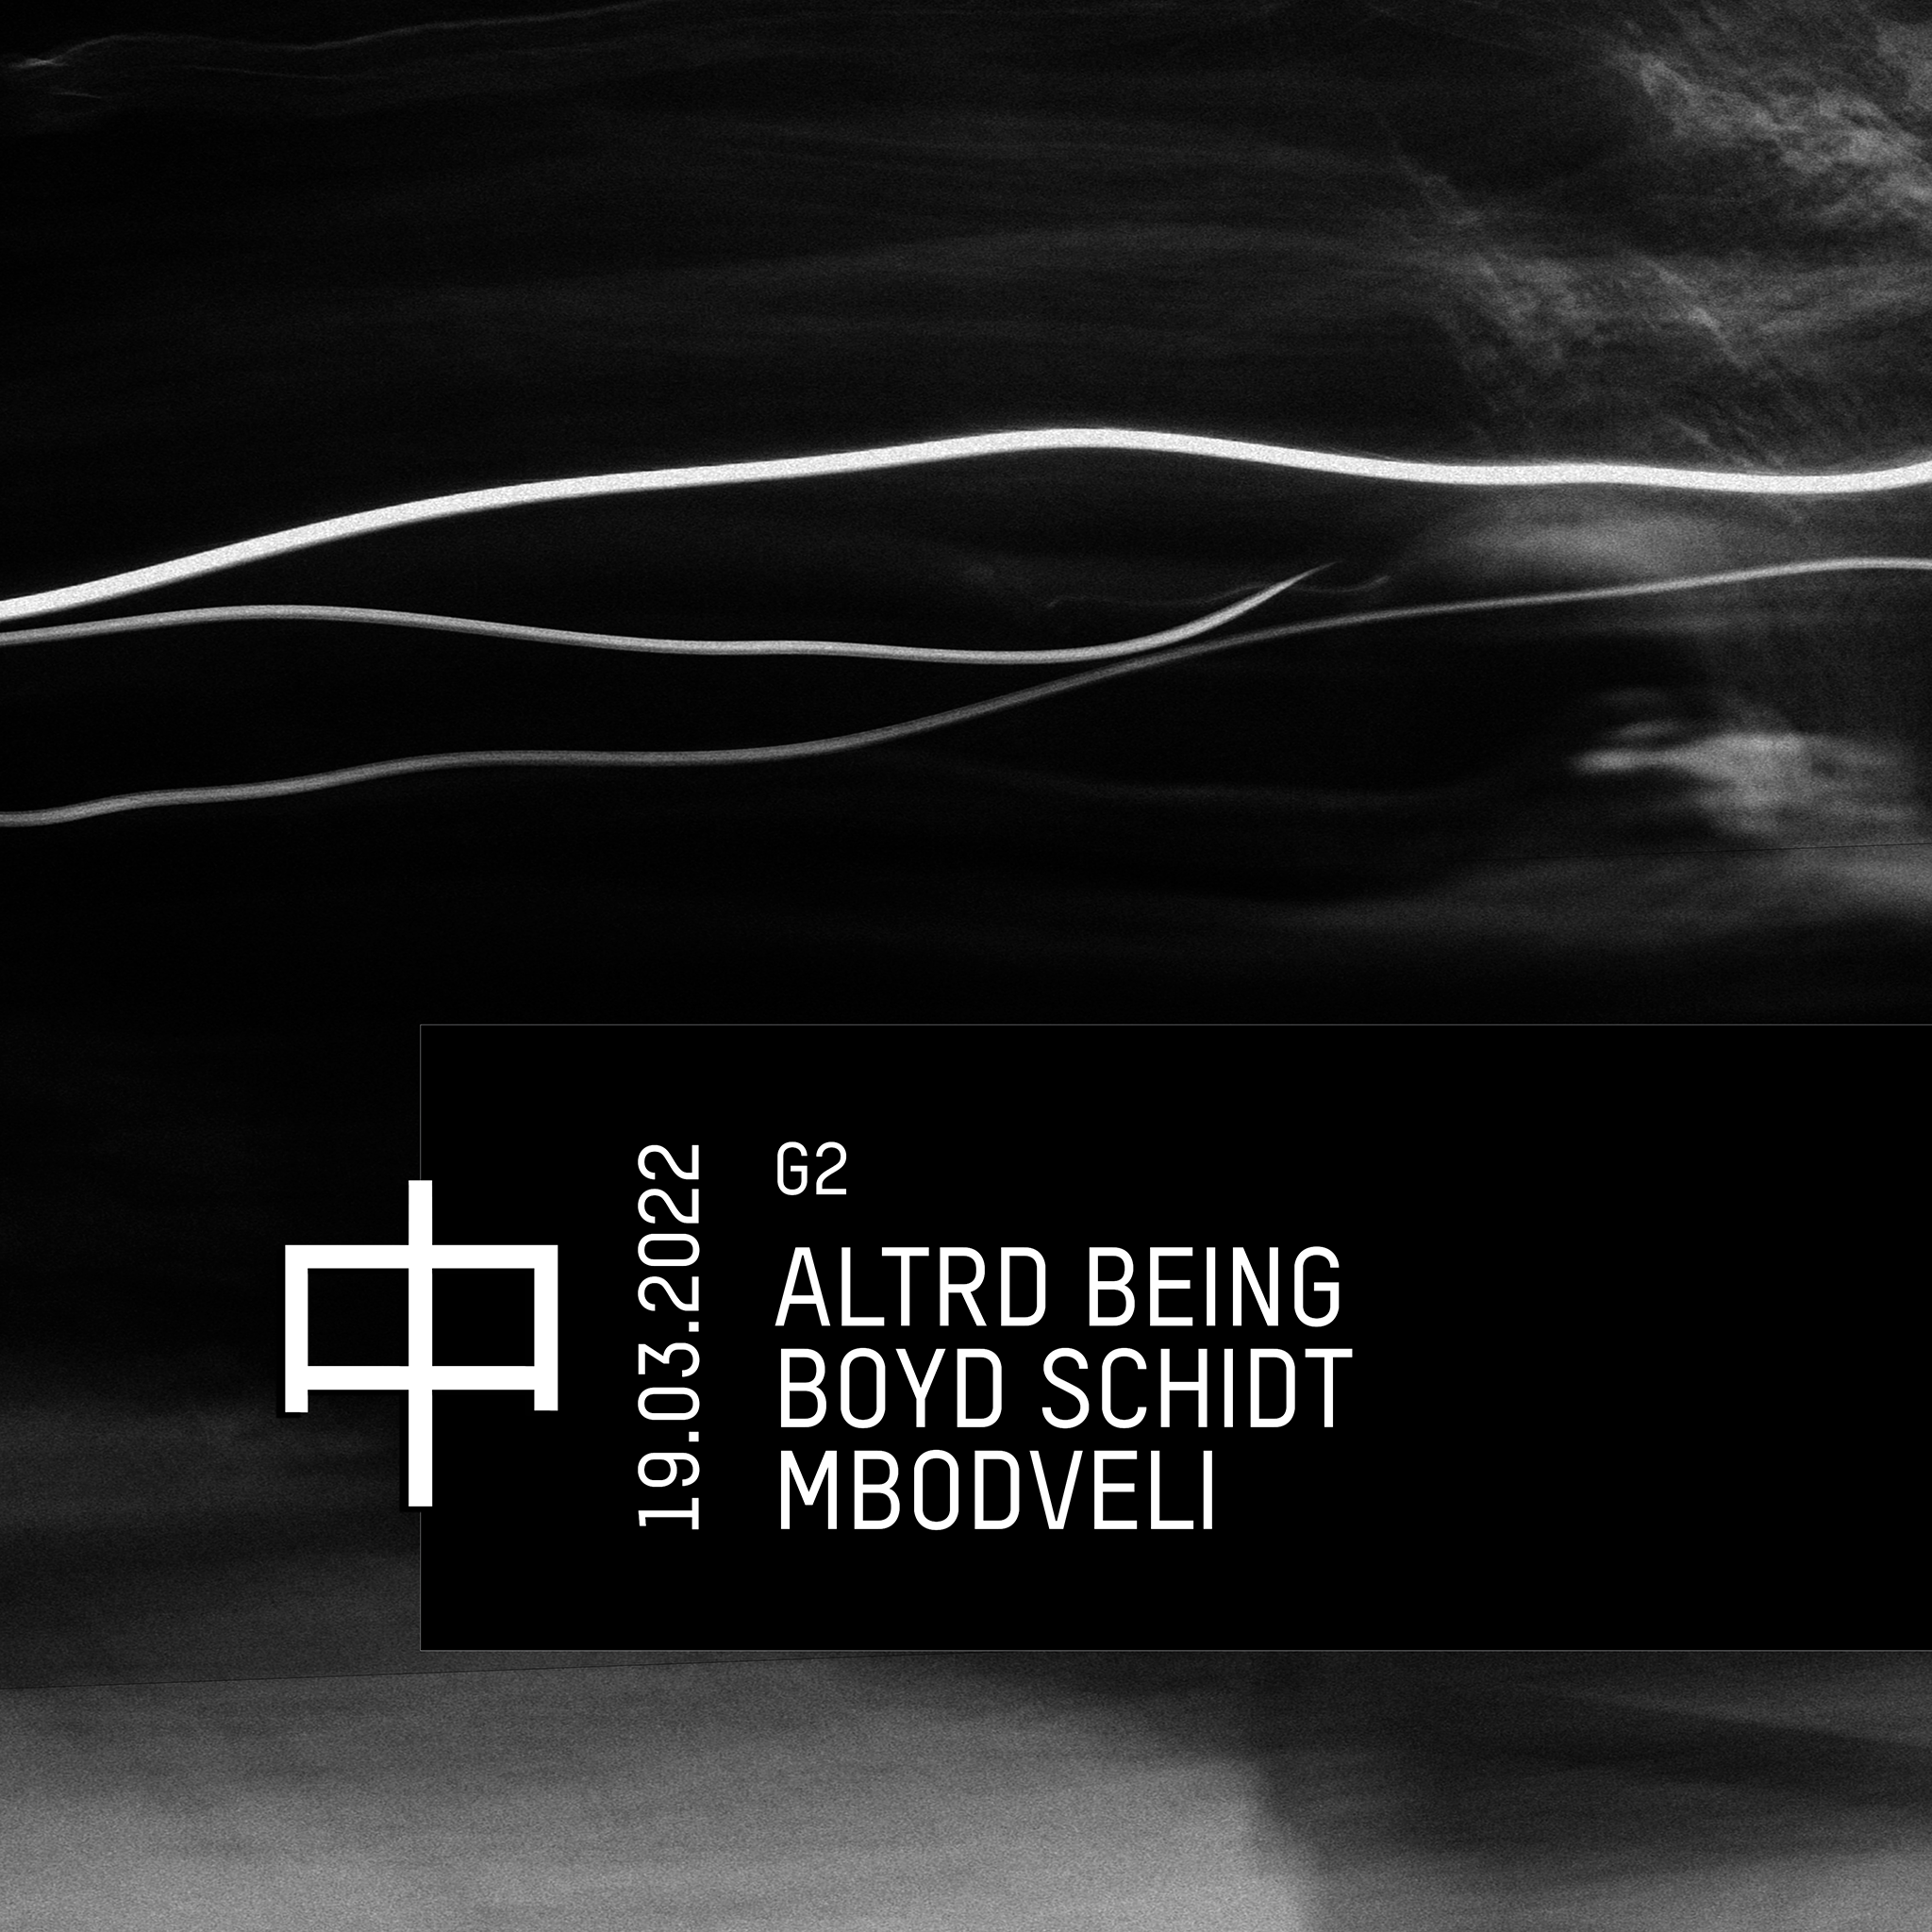 KHIDI 中 G2: Altrd Being ❚ Boyd Schidt ❚ MBODVELI - フライヤー表